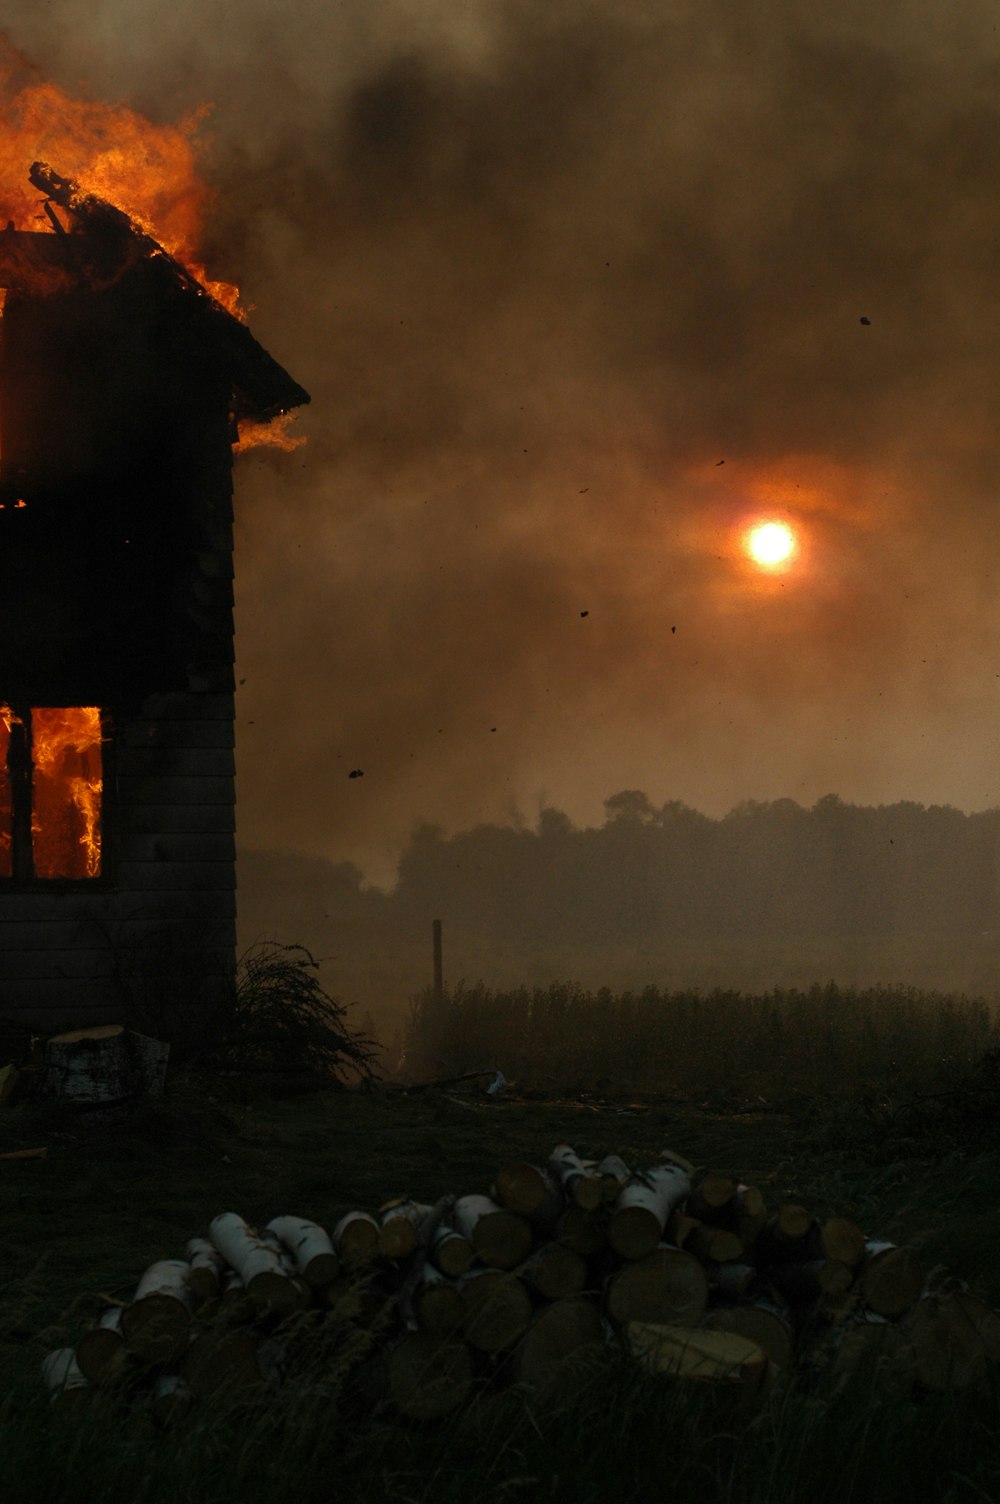 Photographie en accéléré d’un bâtiment en feu pendant l’heure dorée